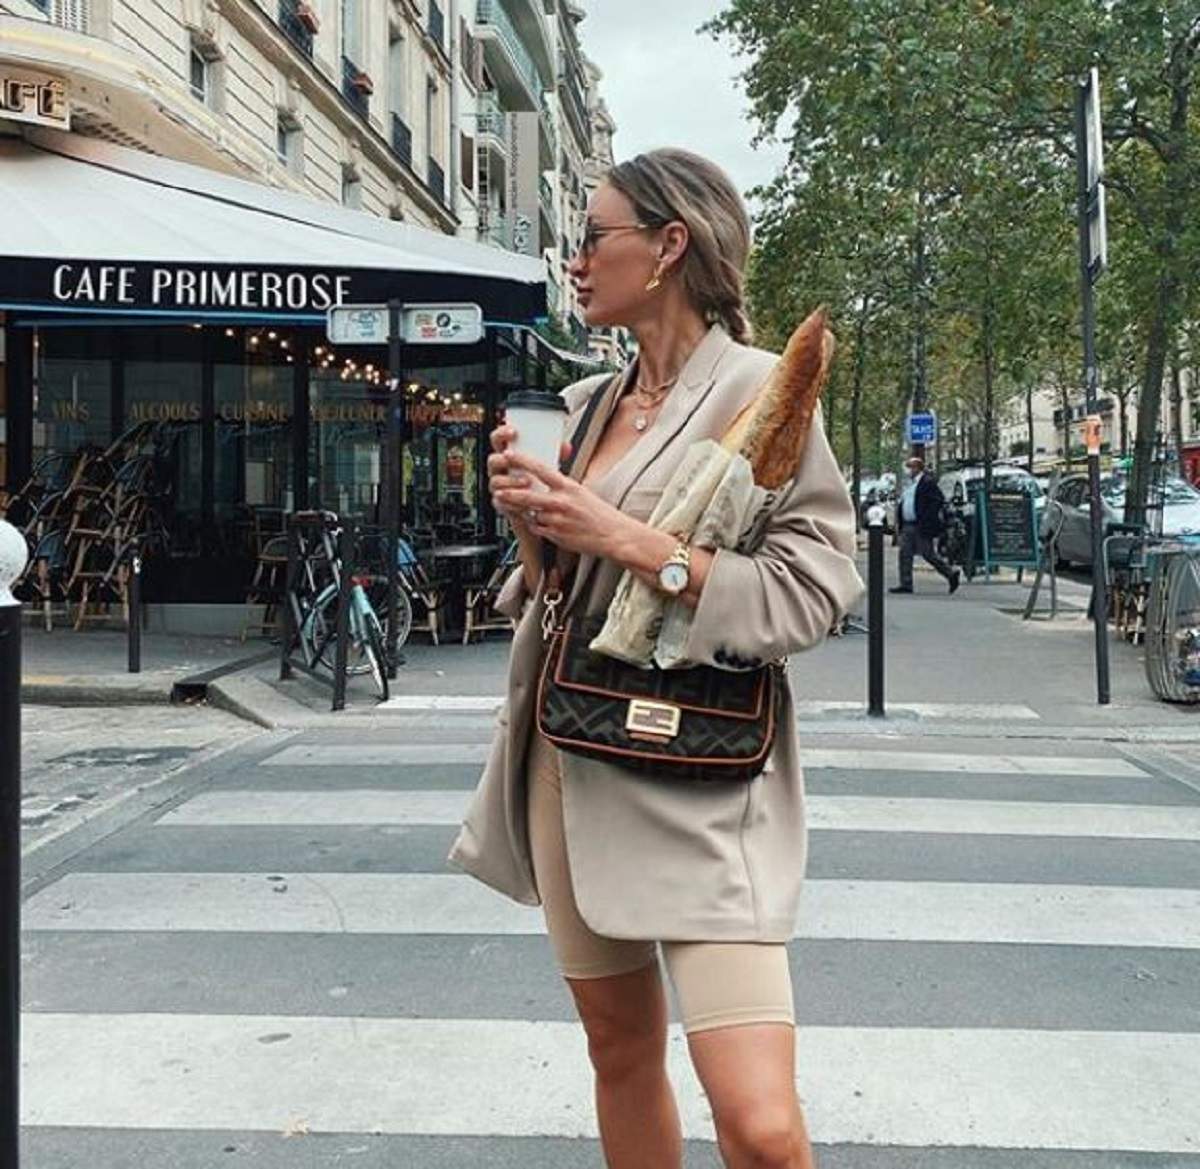 Ioana Chisiu a facut cumparaturi in paris, este pe strada, poarta un sacou si pantaloni scurti bej